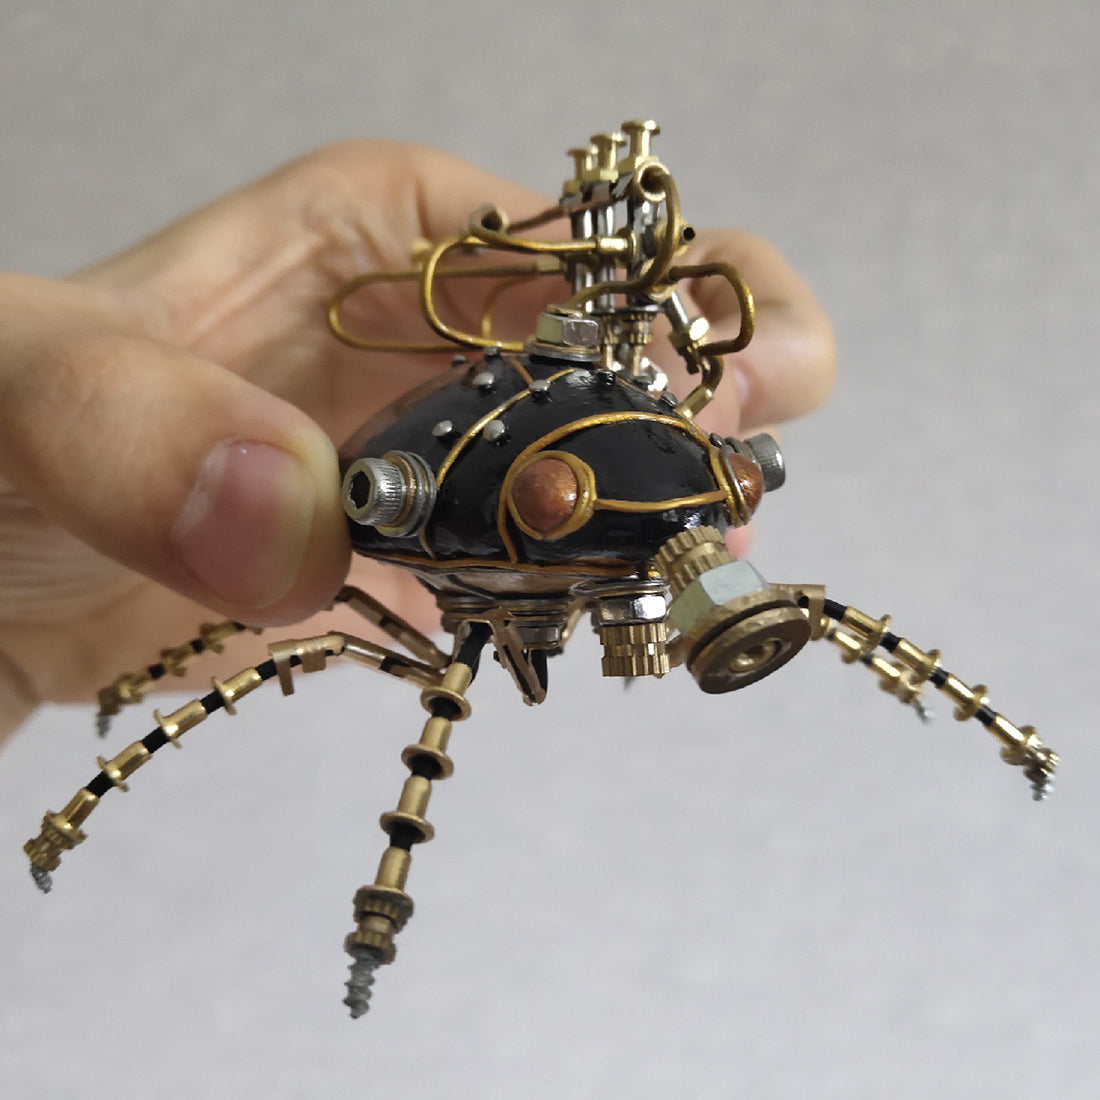 3D Metal Little Beetle Model Handmade Steampunk Crafts Sculpture